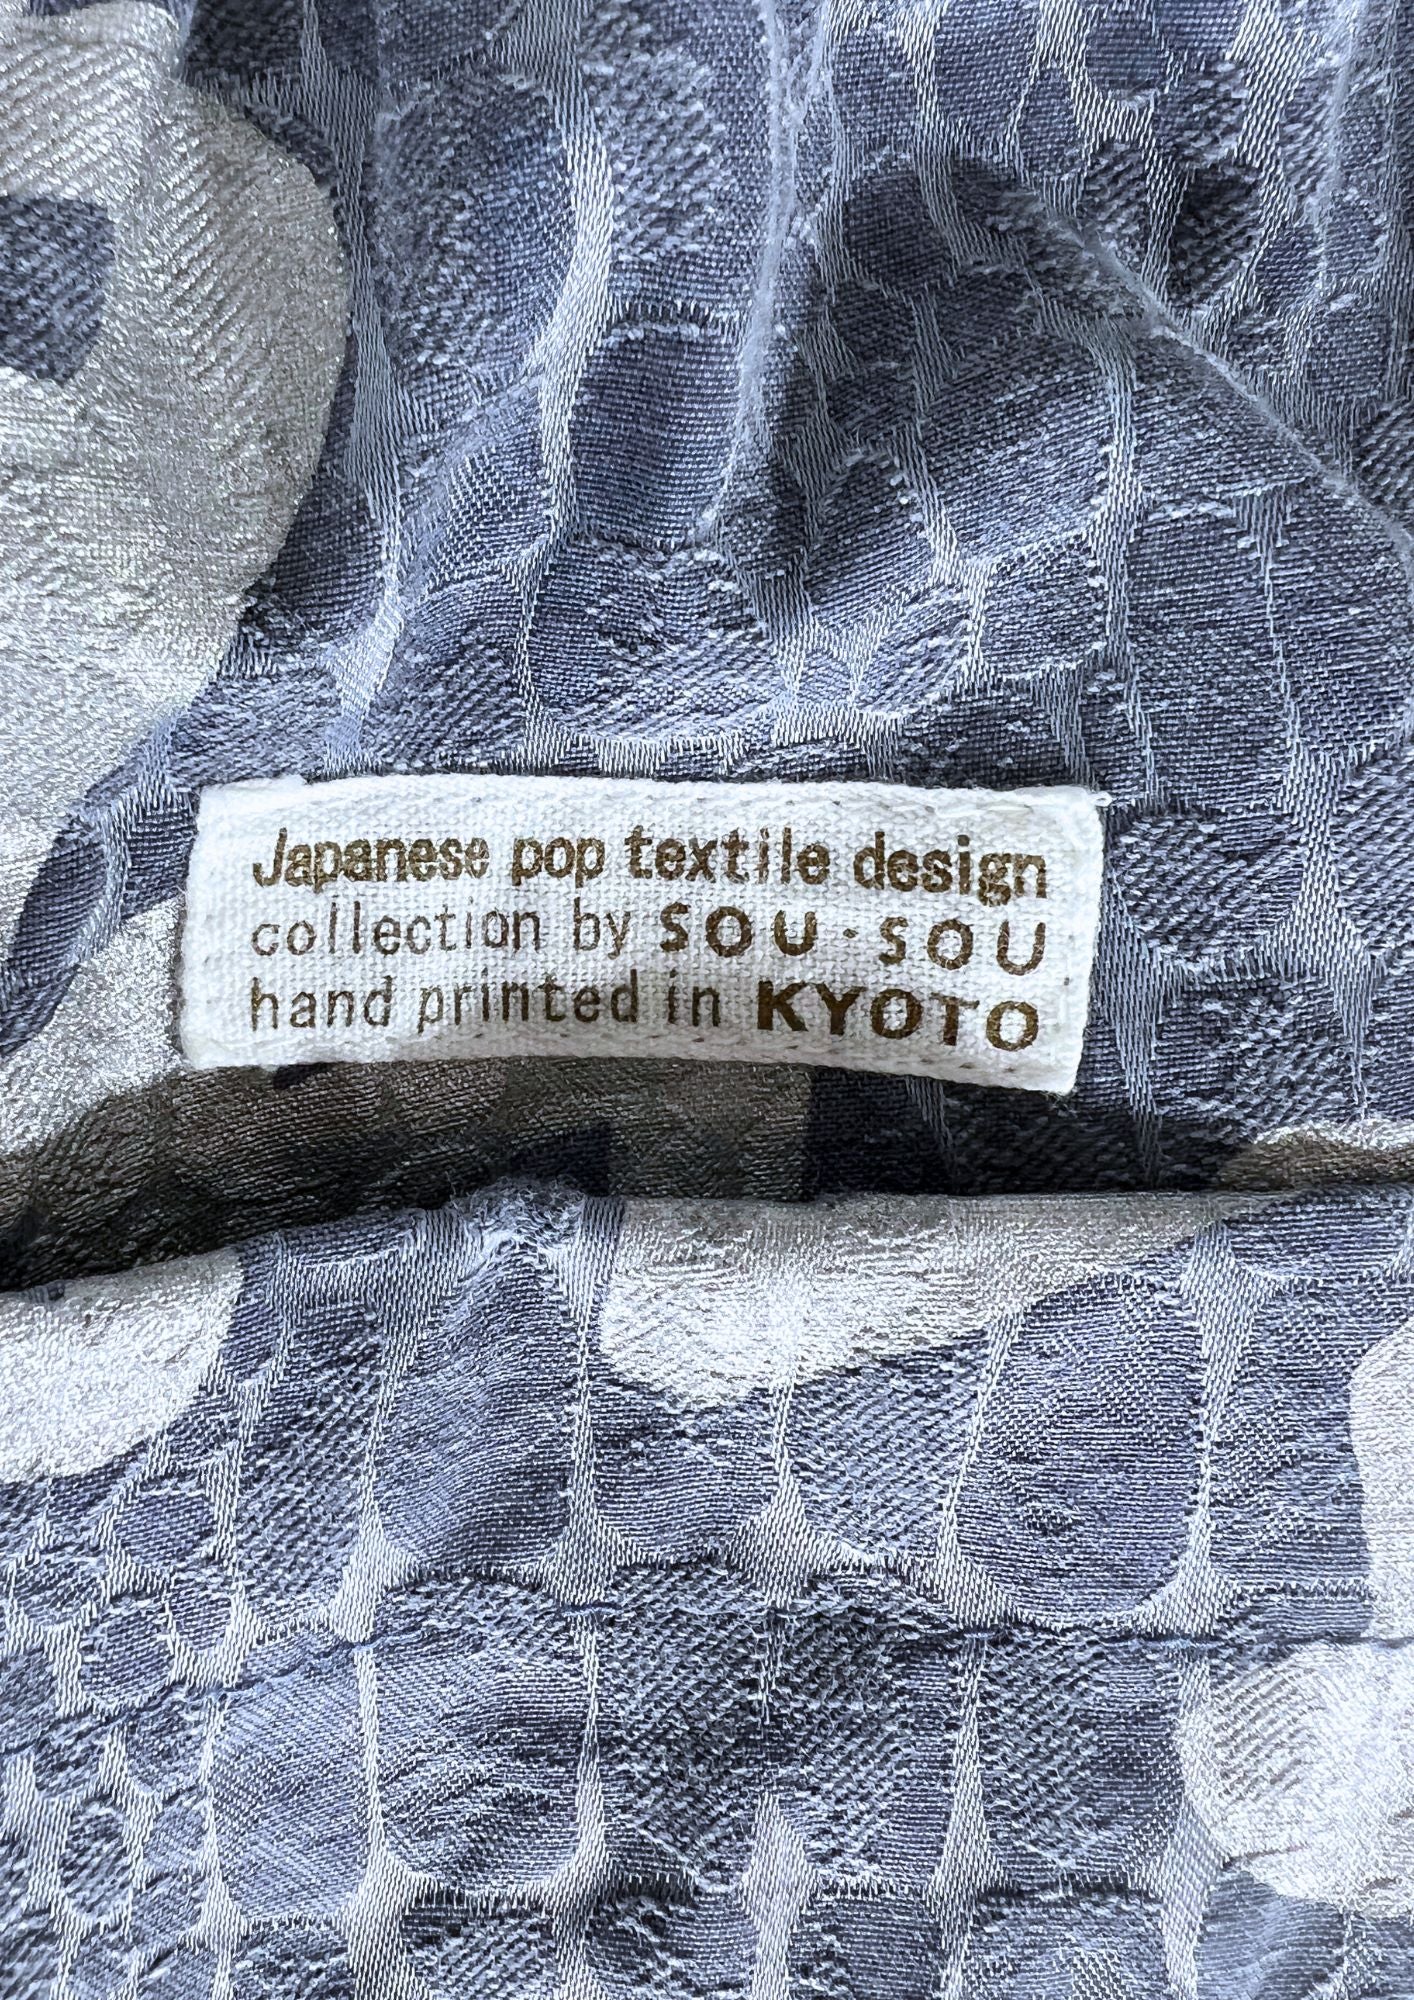 2010s SOU-SOU Japanese Brand Shorts